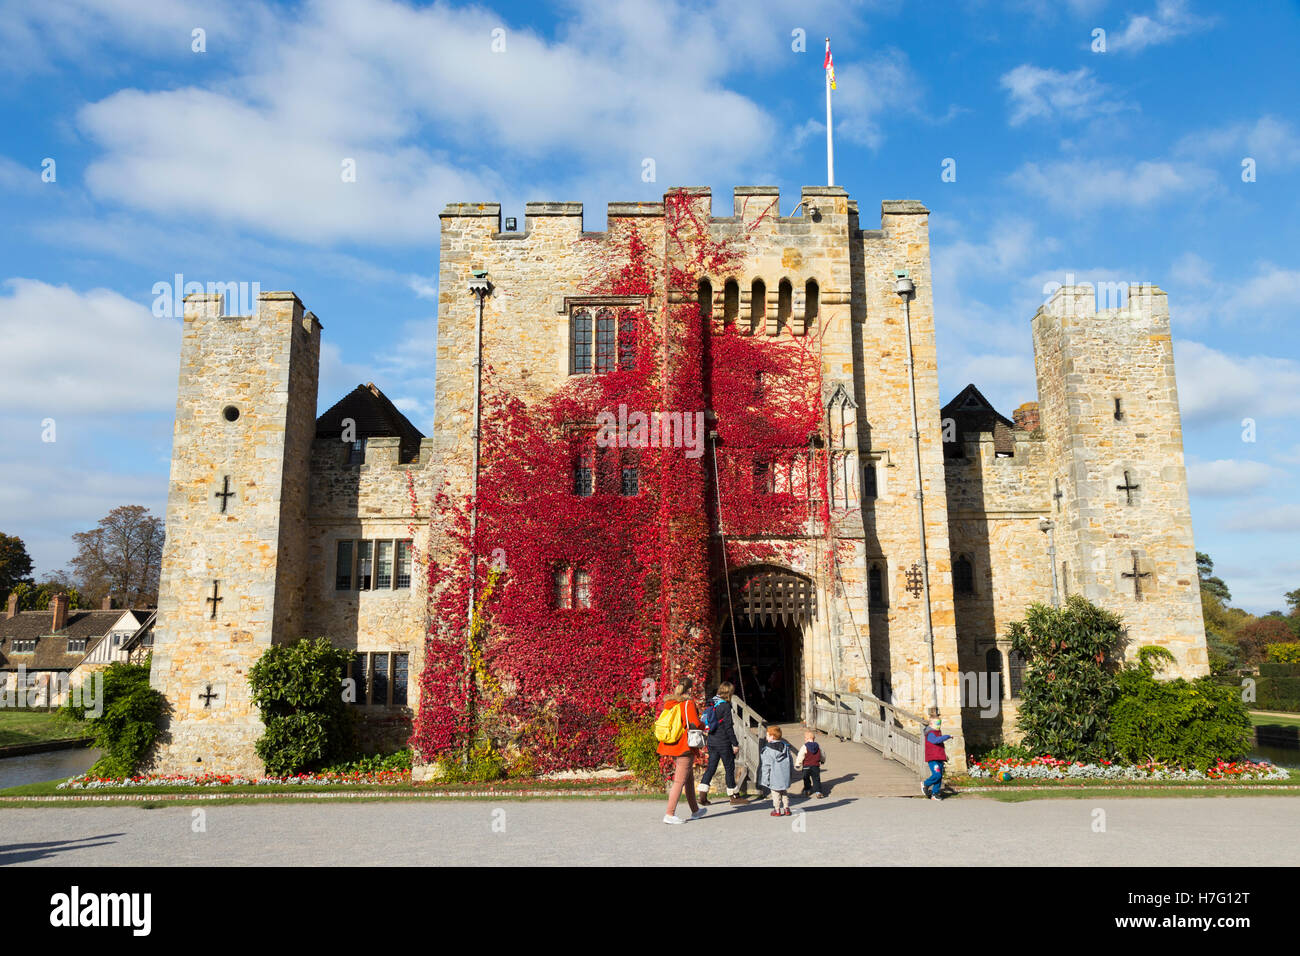 Le château de Hever doublés de vigne vierge d'automne rouge : Blue Sky / ciel ensoleillé / sun & pont-levis / dessiner pont au-dessus de douves. Kent UK Banque D'Images